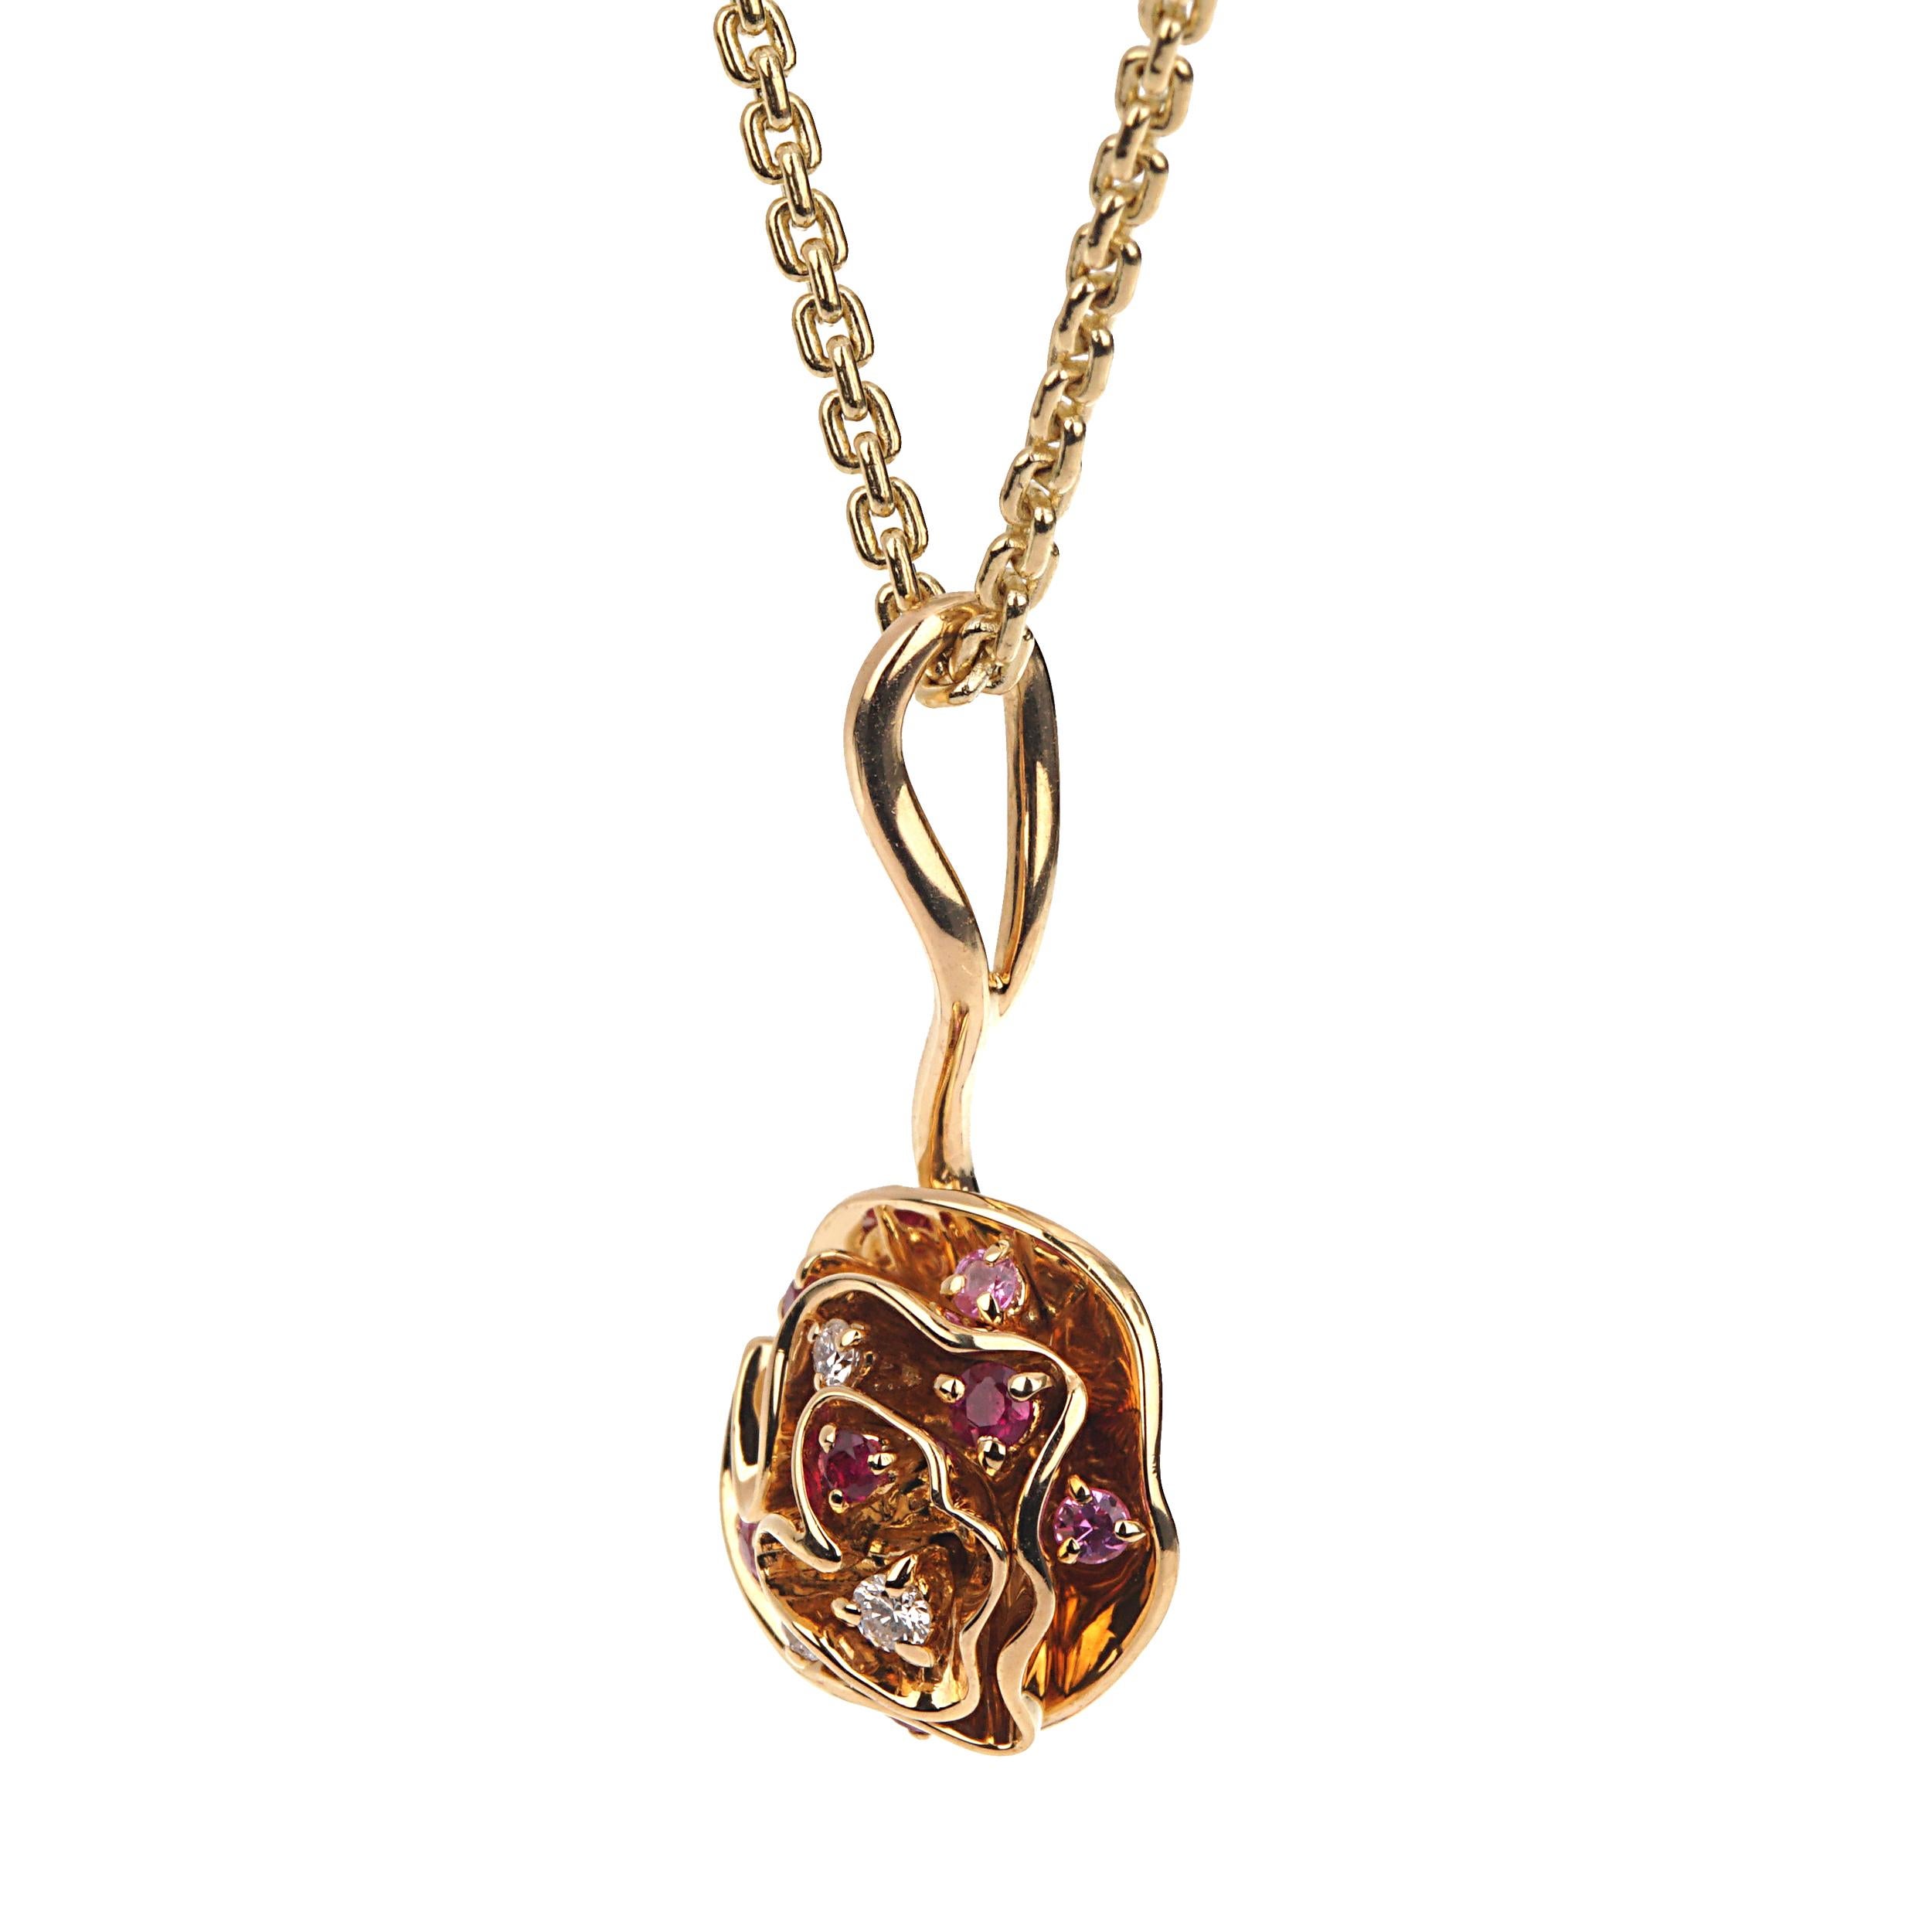 Le collier à pendentifs Louis Vuitton Flower est un emblème de sophistication et d'élégance vibrante, méticuleusement conçu pour témoigner de l'héritage de la marque en matière de luxe et de savoir-faire artisanal. Ce collier exquis mesure une